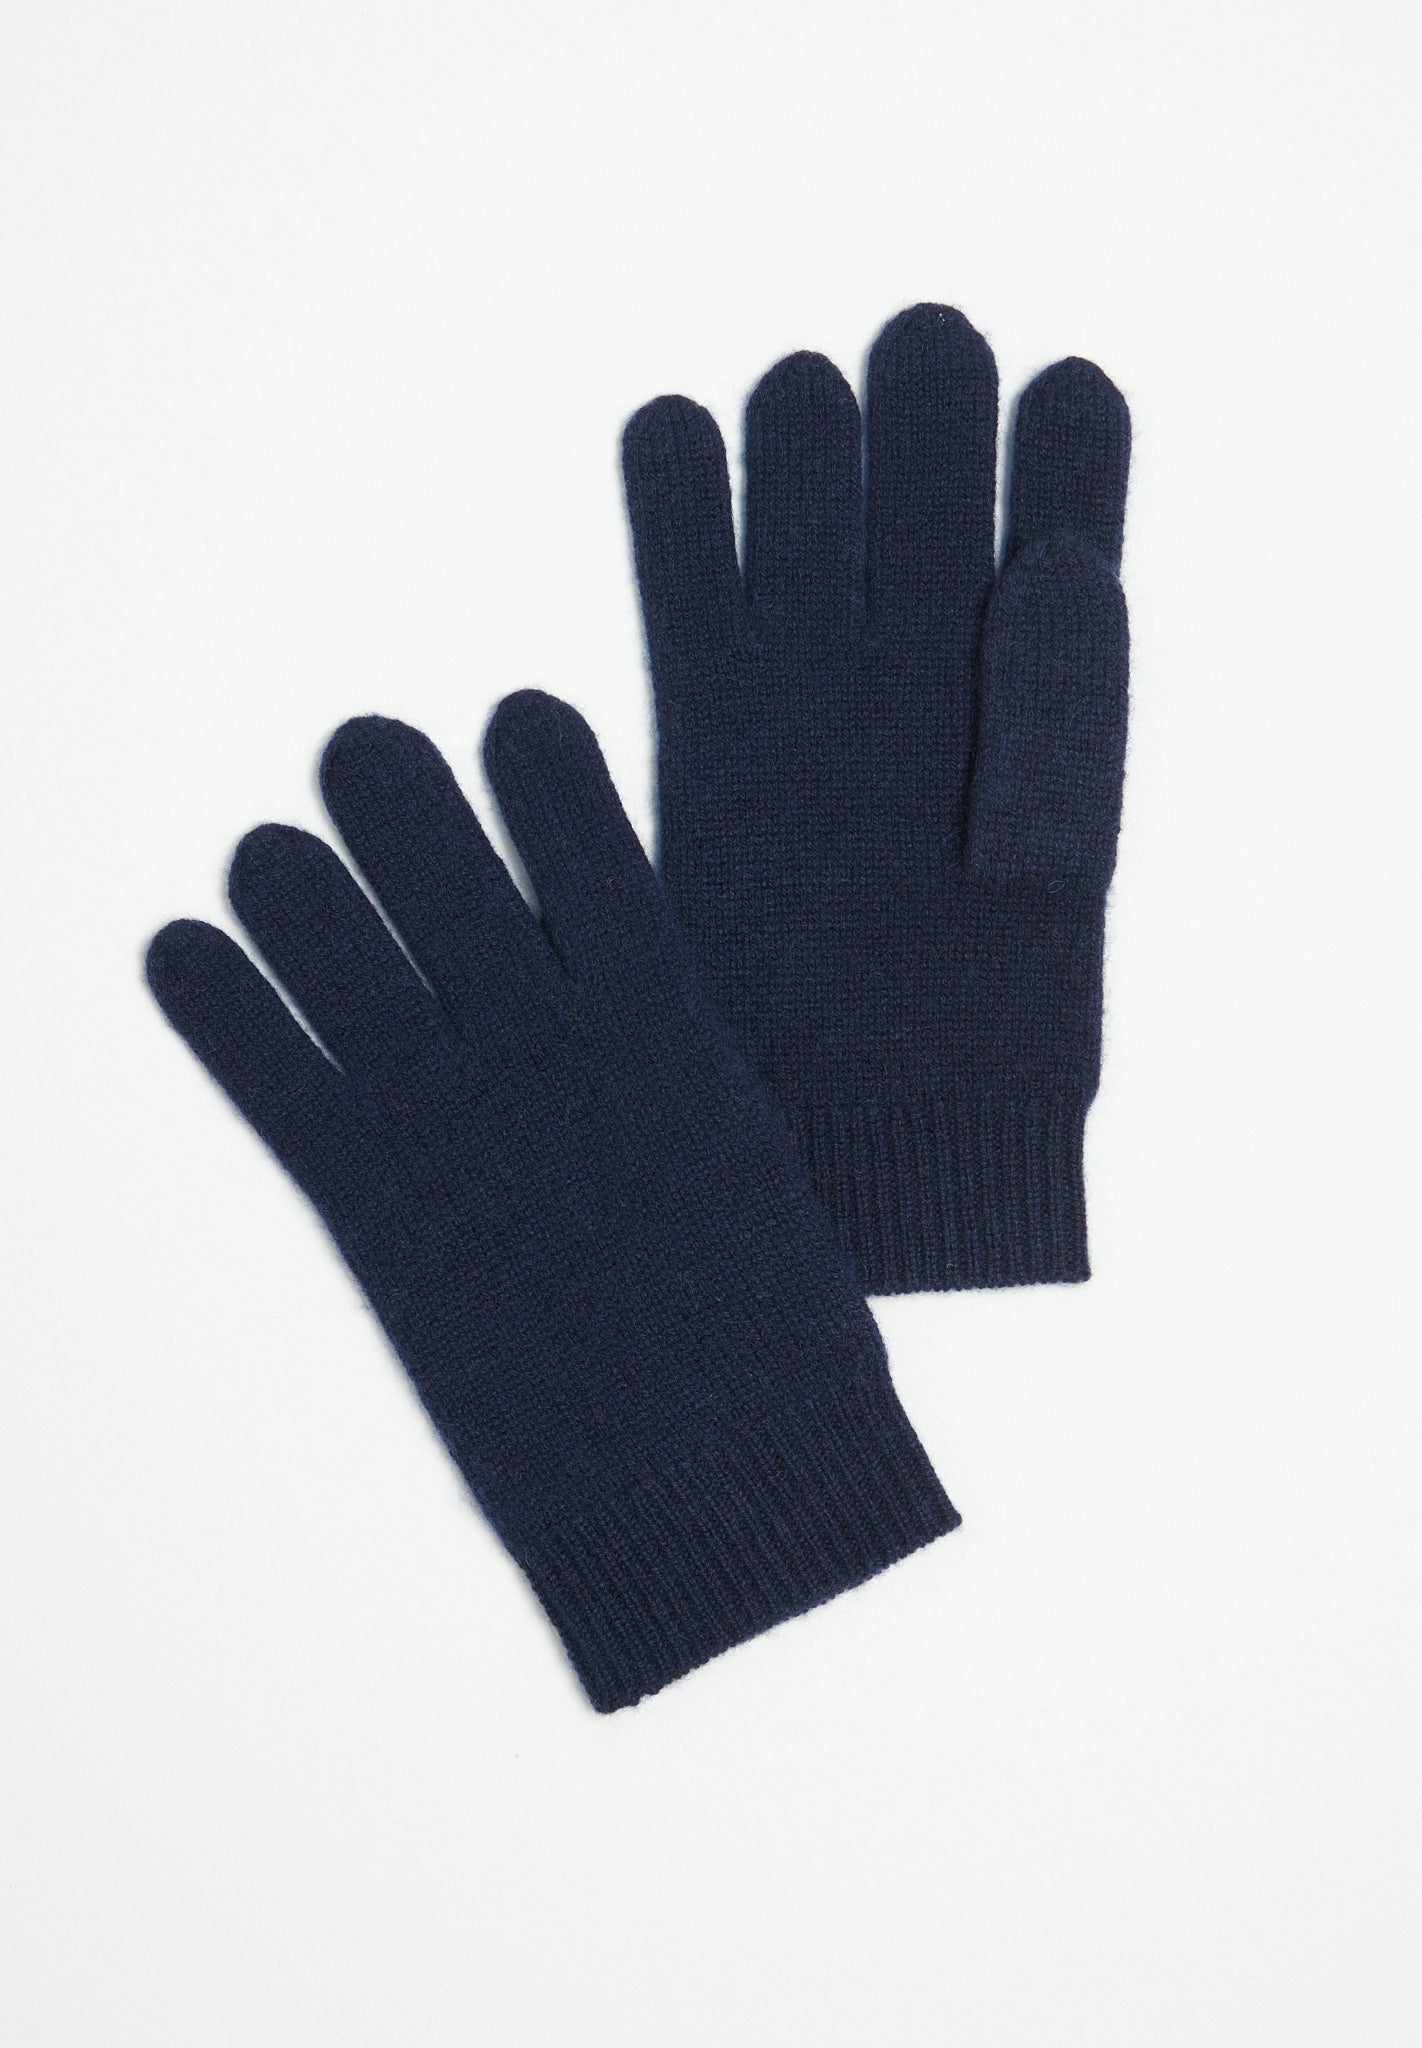 Navy blue 4-thread cashmere gloves